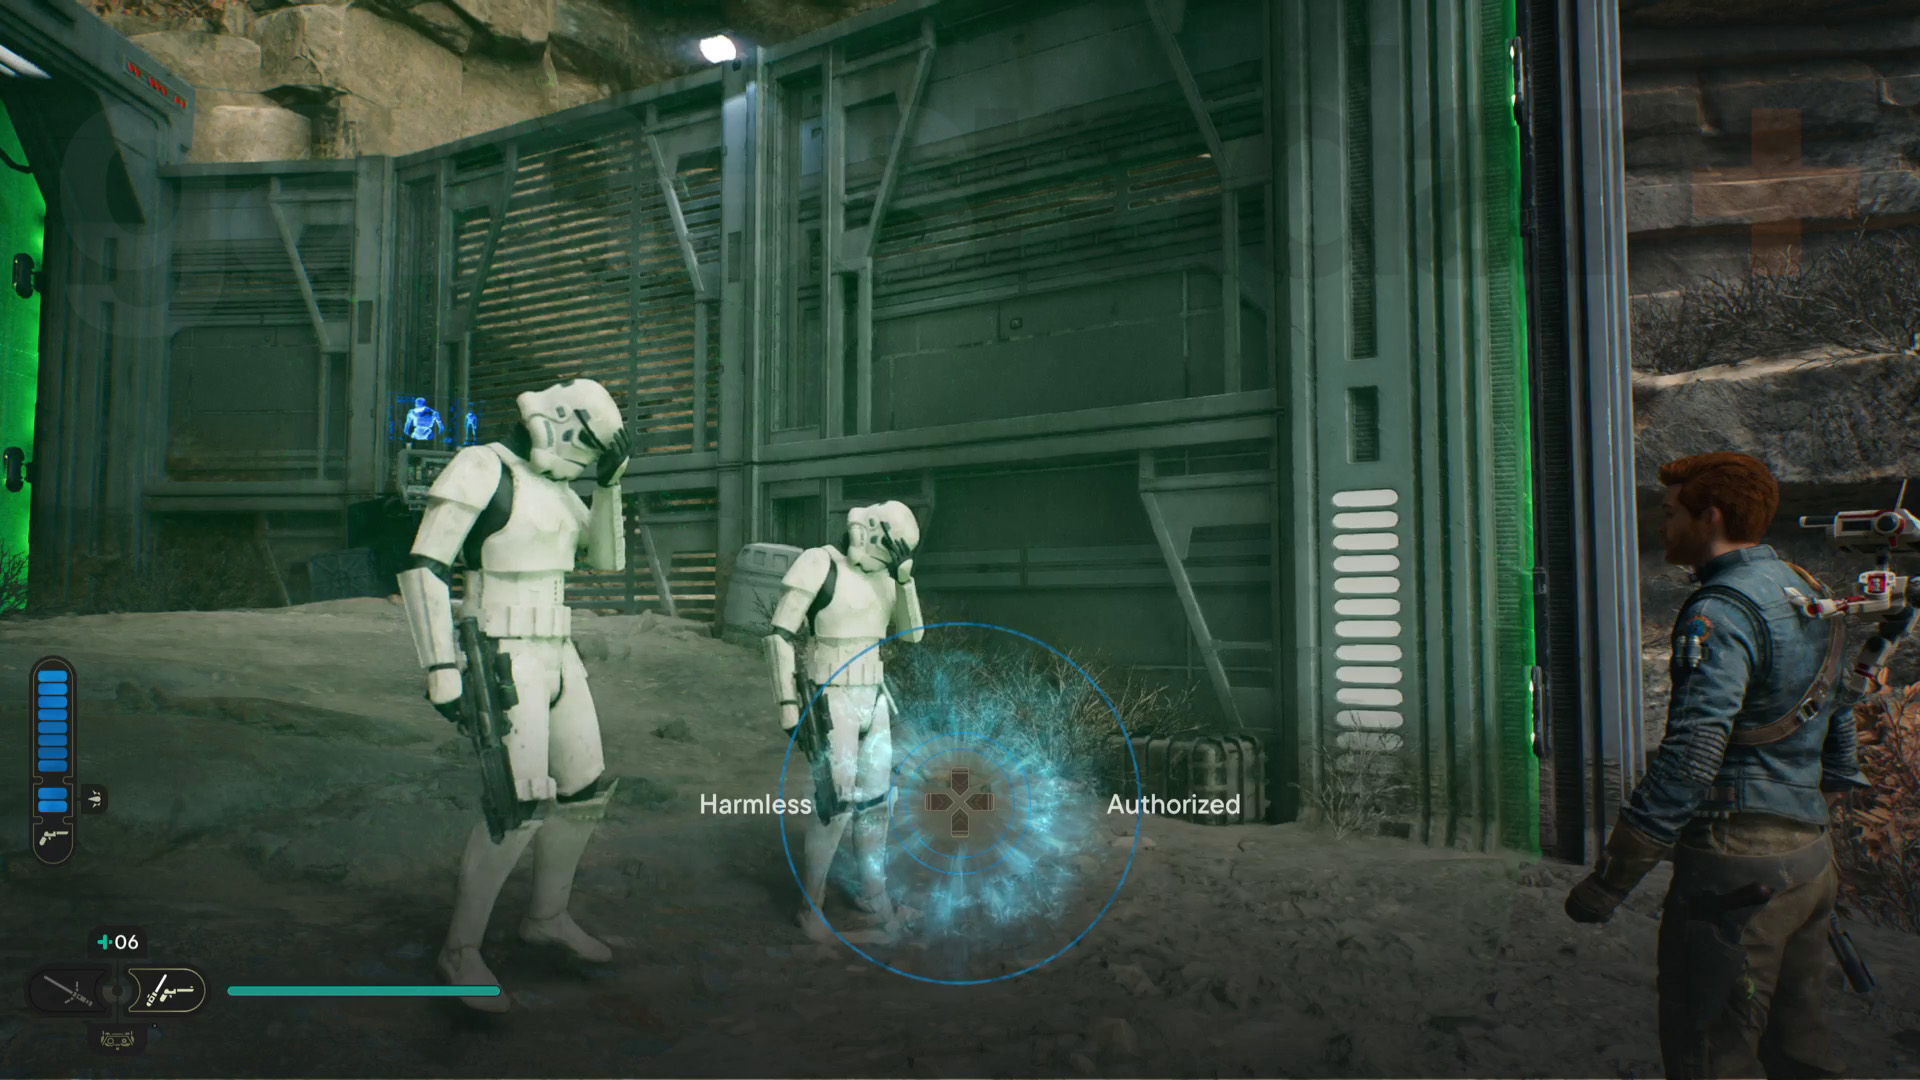 Star Wars Jedi Survivor Koboh walkthrough Cal utför ett hjärntrick på två stormtroopers bakom en grön laserbarriär